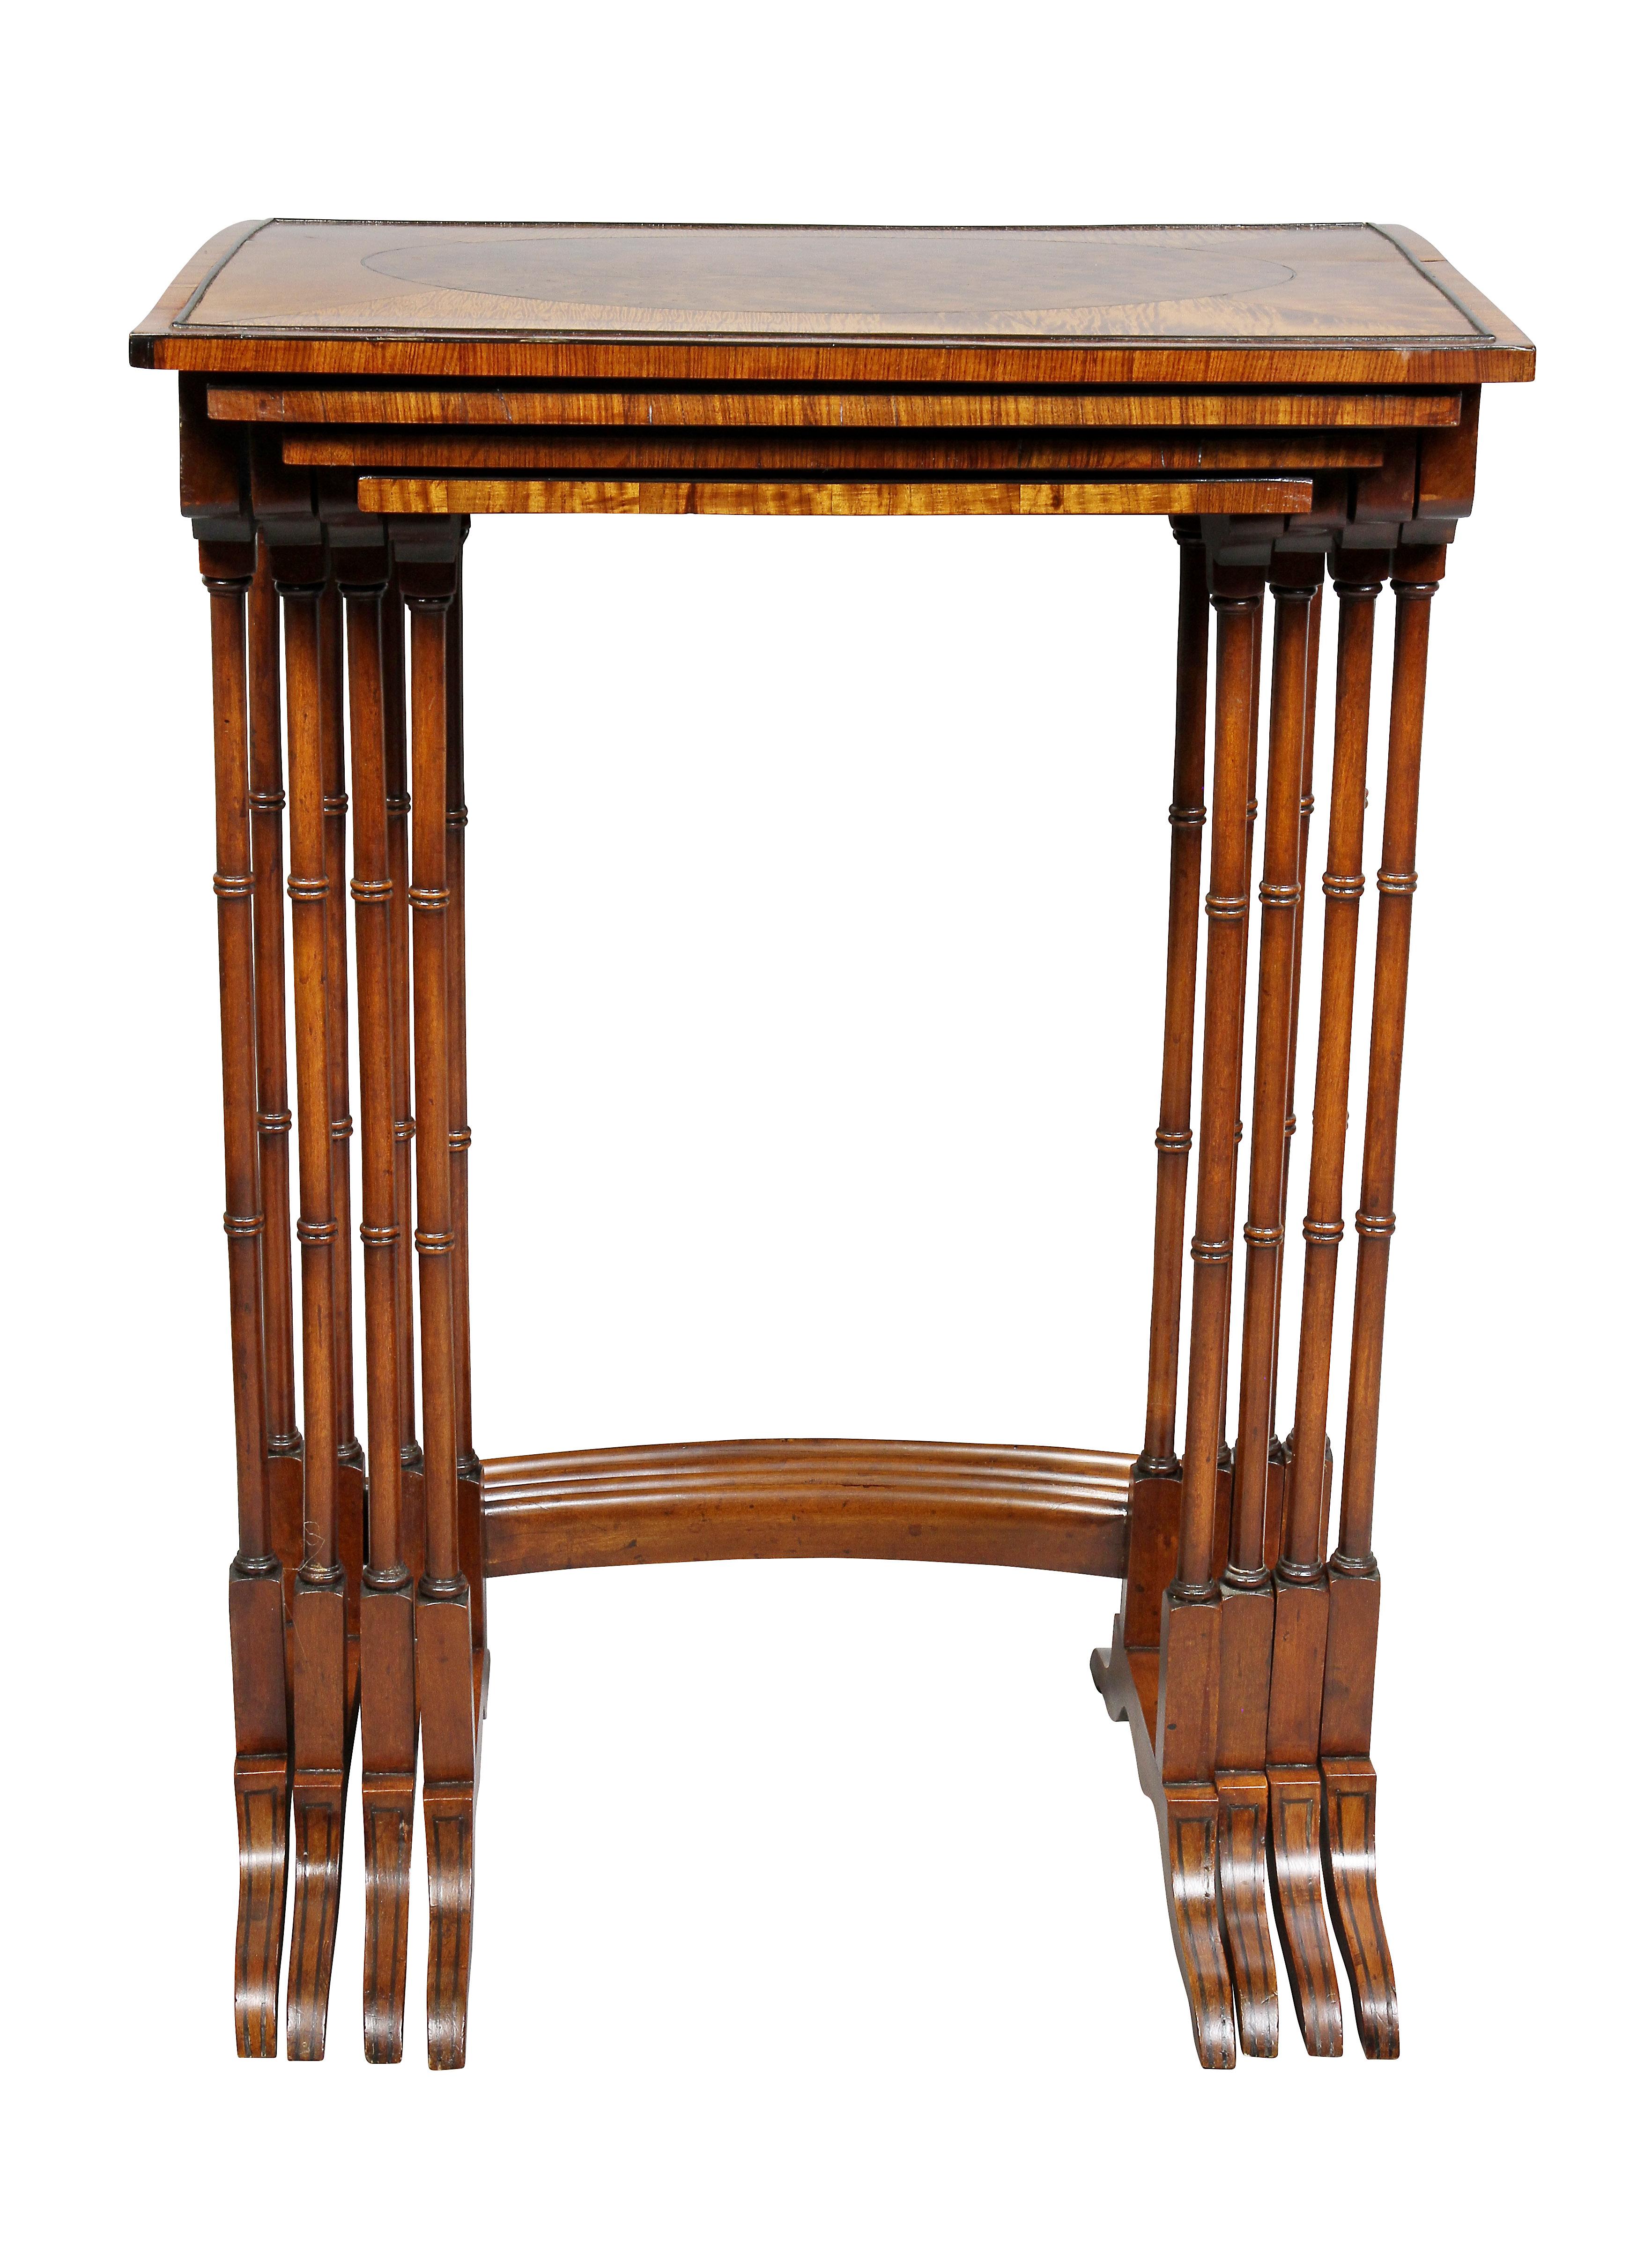 Jeweils abgestufter Tisch mit rechteckiger Platte mit ovalem Paneel und Satinholzumrandung, gedrechselte Bambusbeine, Säbelbeine.